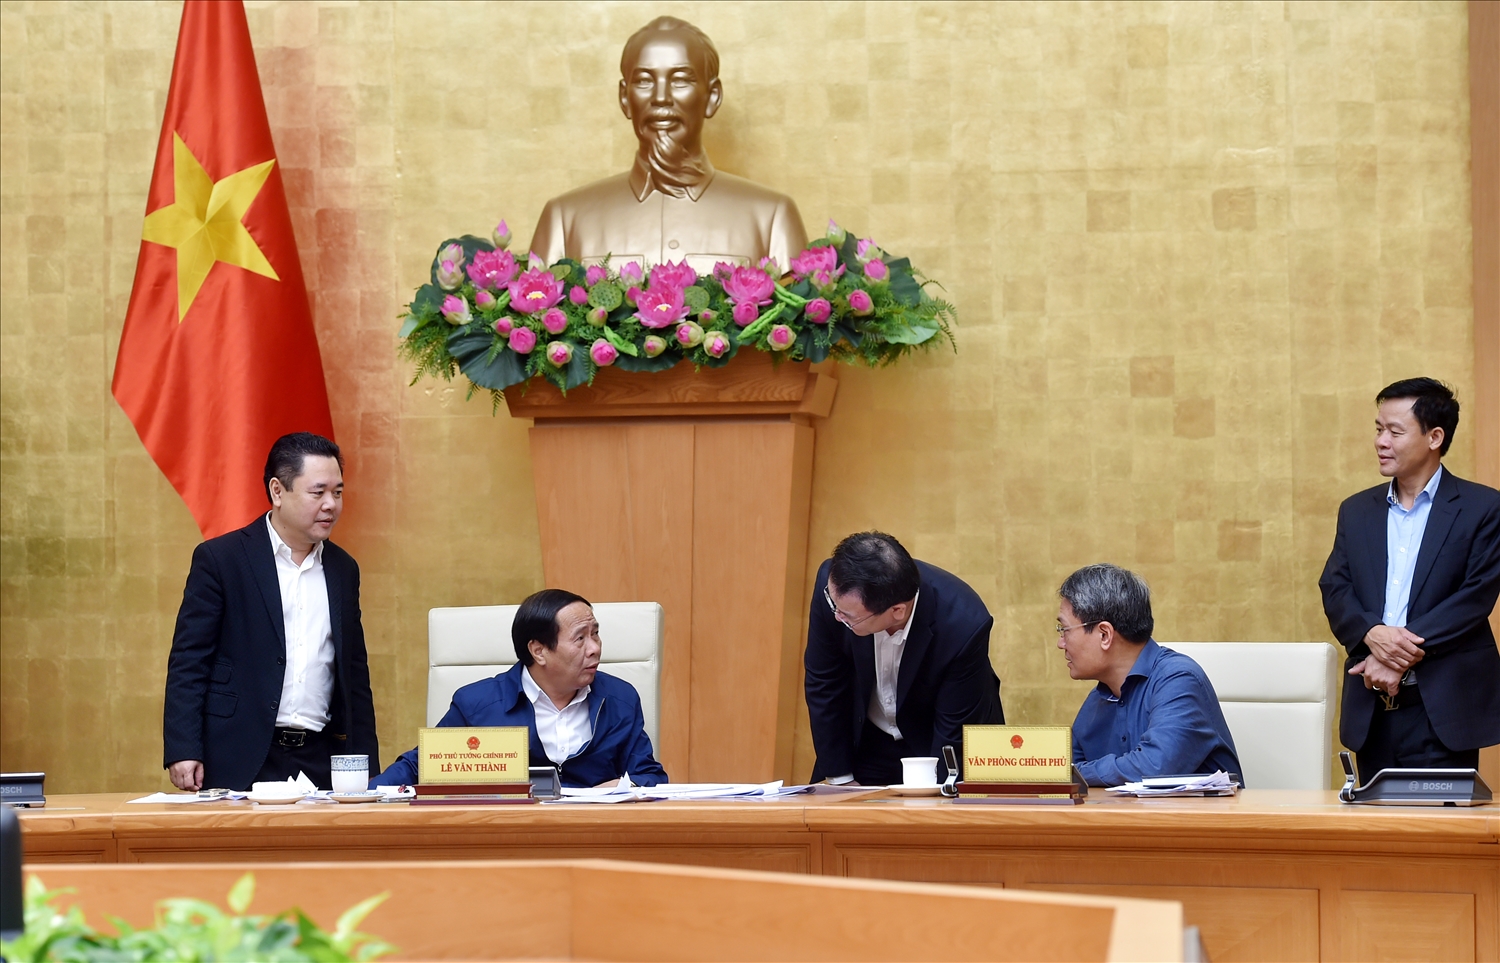 Phó Thủ tướng Lê Văn Thành trao đổi với lãnh đạo một số bộ, ngành sau khi kết thúc cuộc họp - Ảnh VGP/Đức Tuân